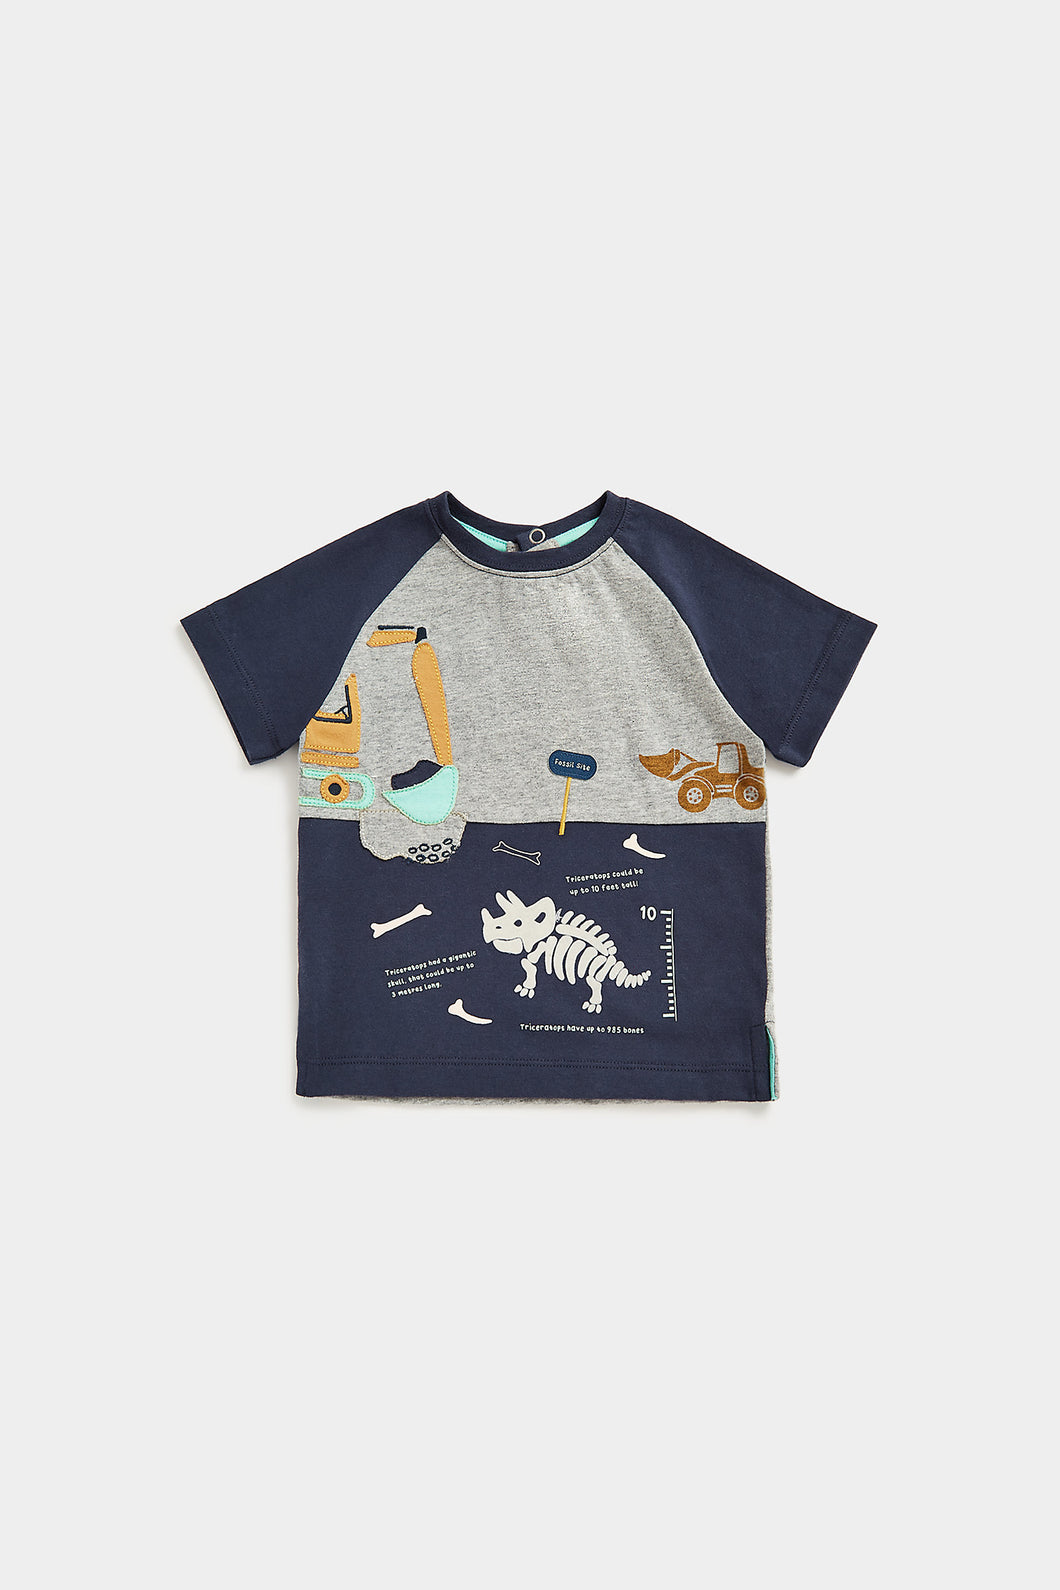 Mothercare Dinosaur Dig T-Shirt